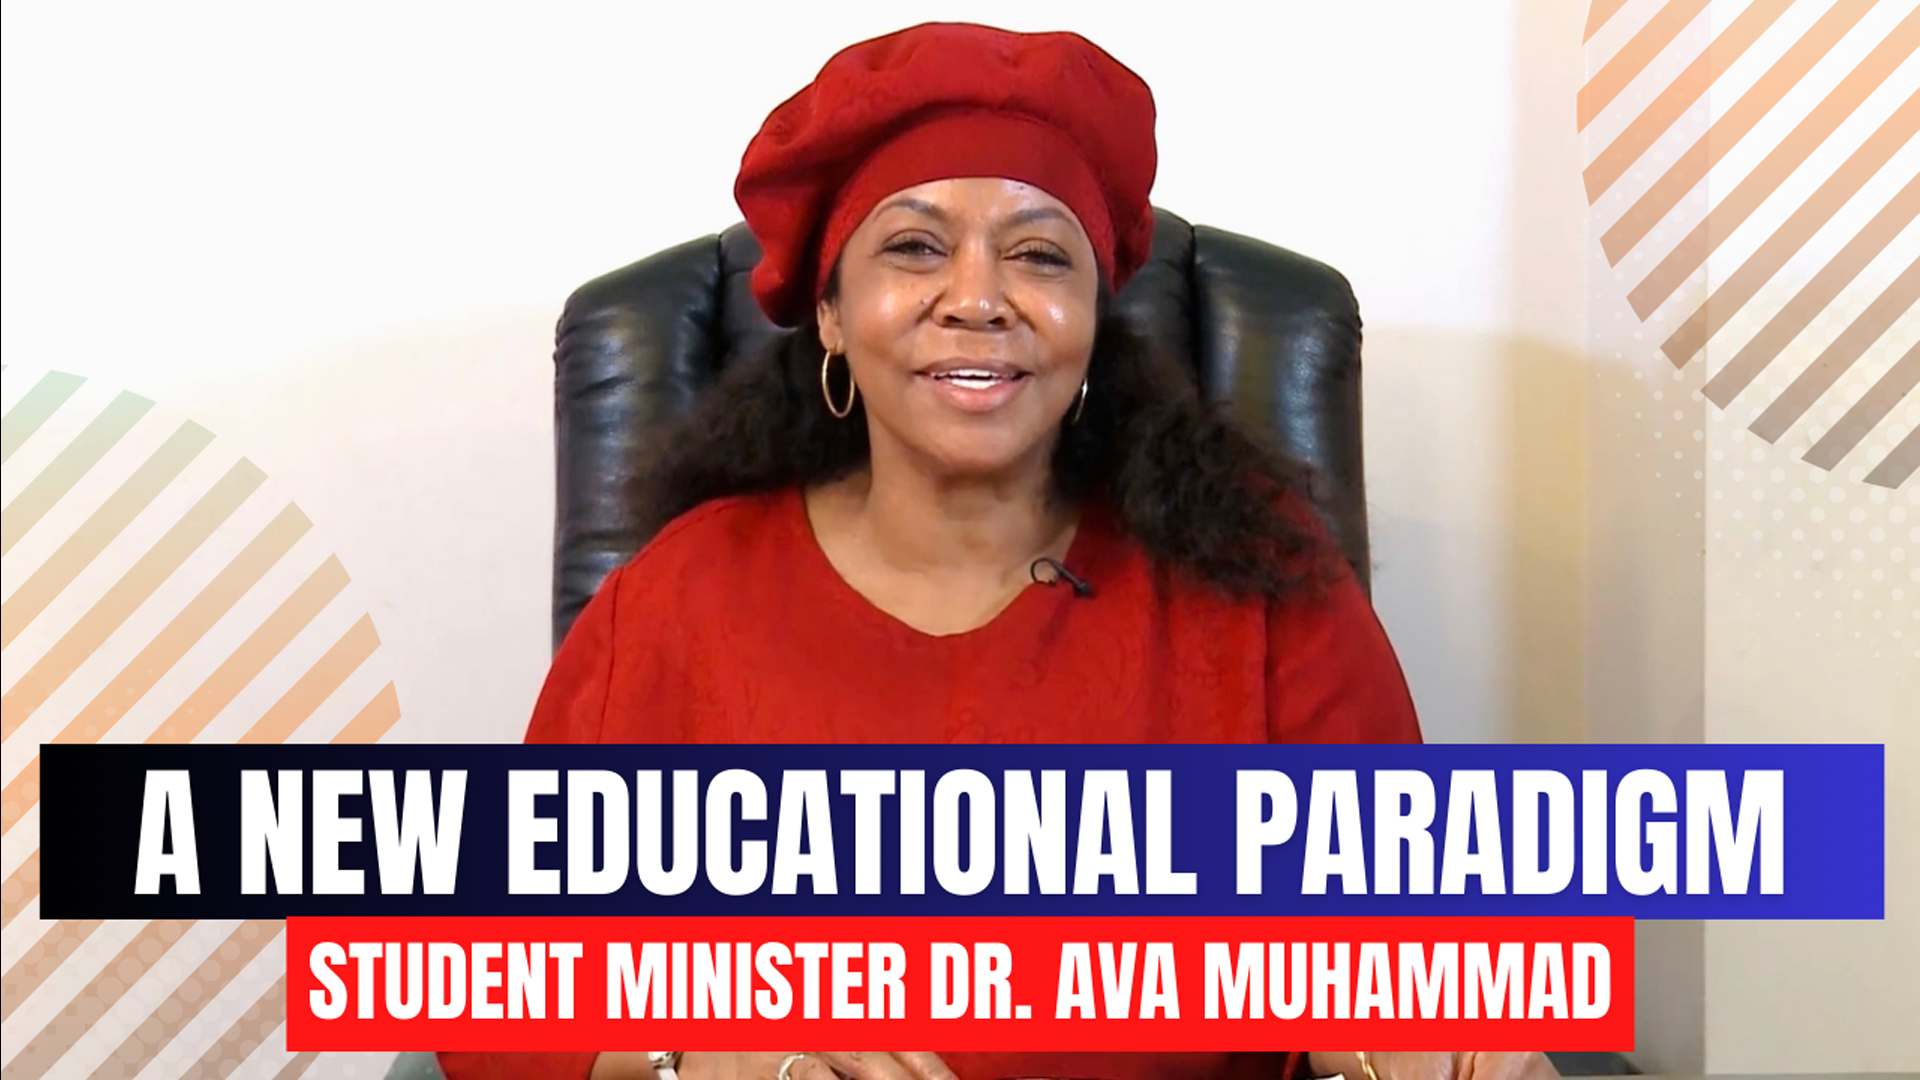 Student Minister Ava Muhammad speaks on New Educational Paradigm